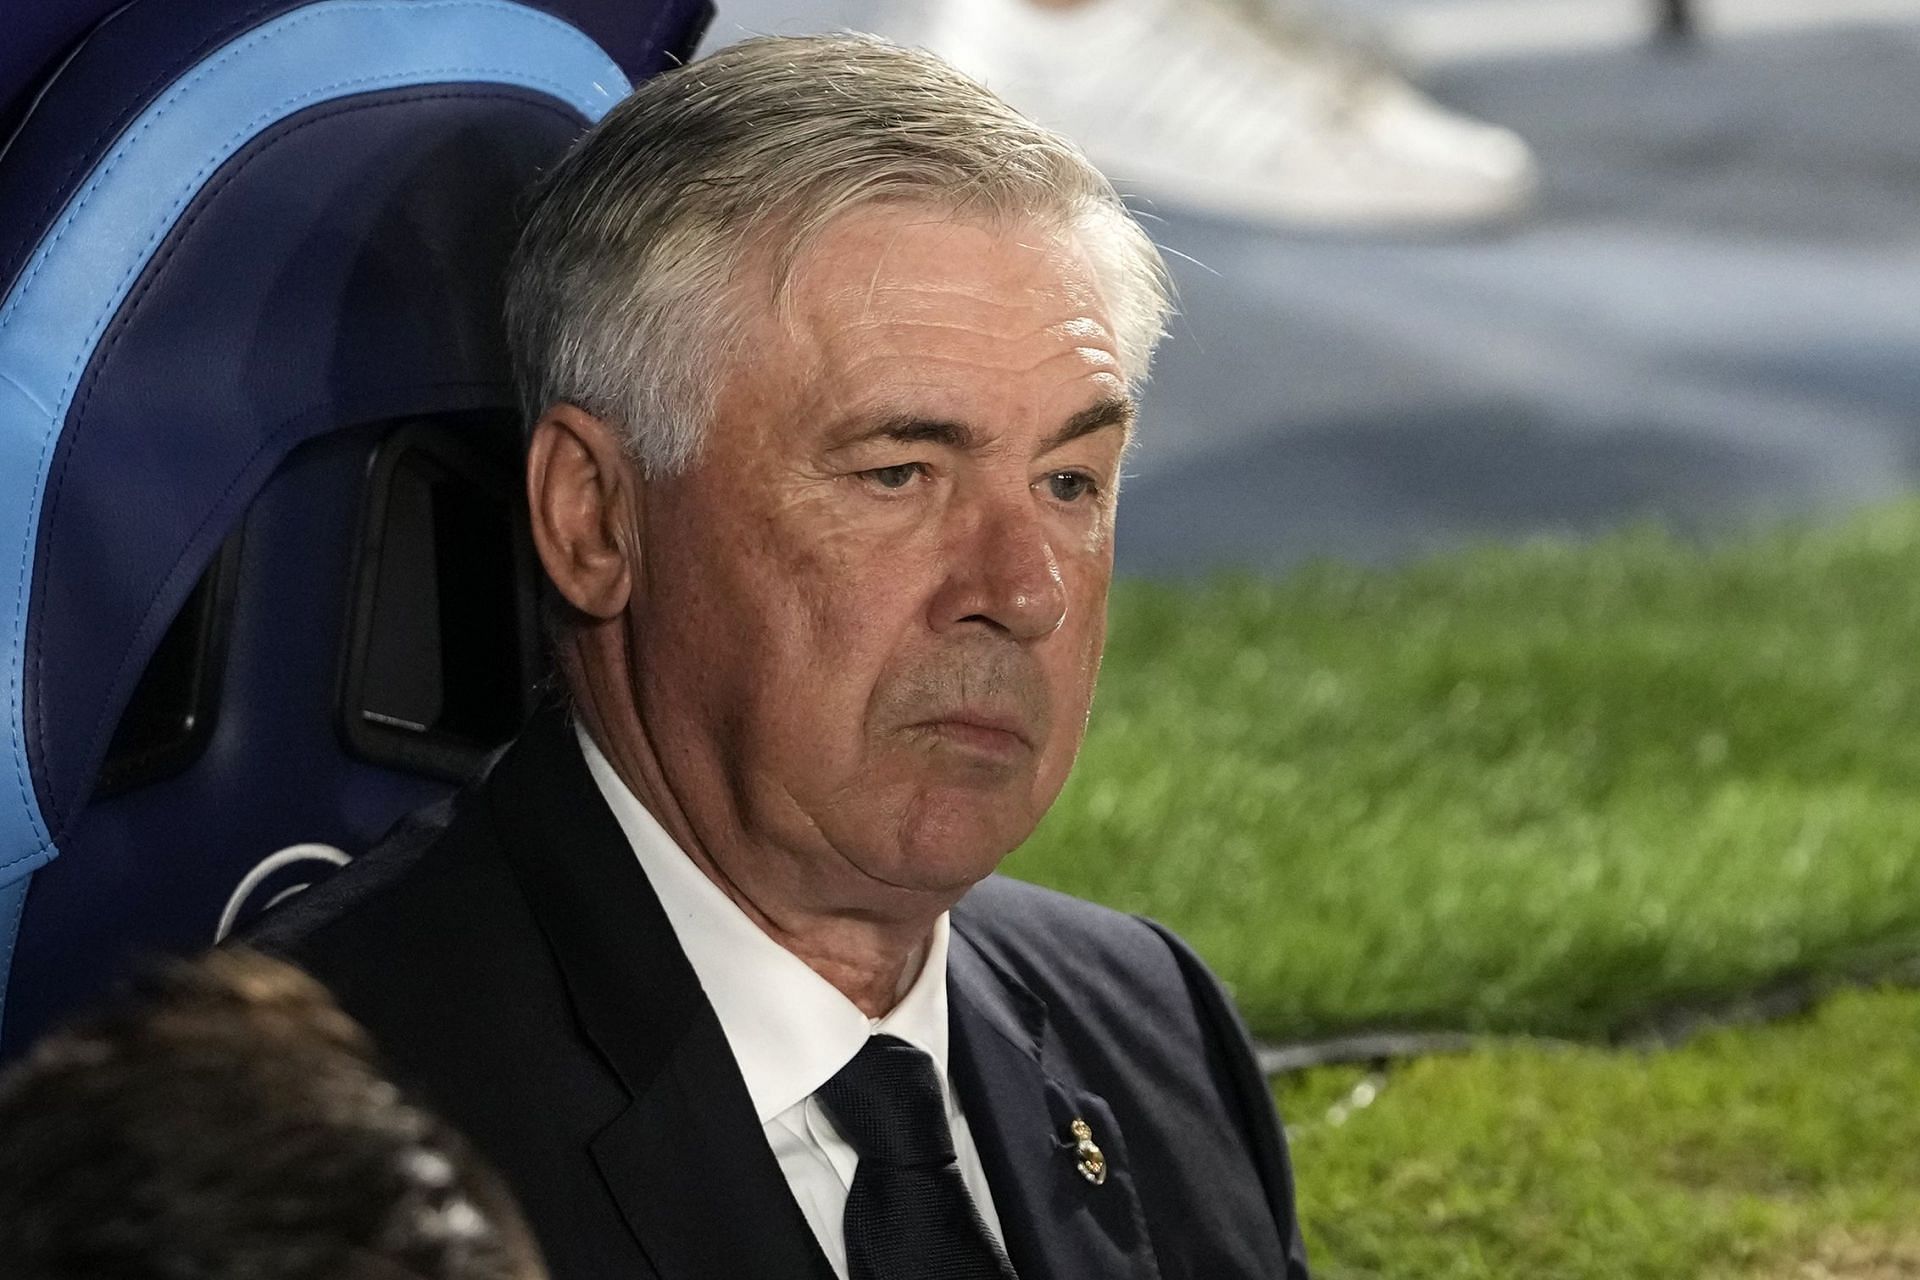 Los Blancos boss Carlo Ancelotti